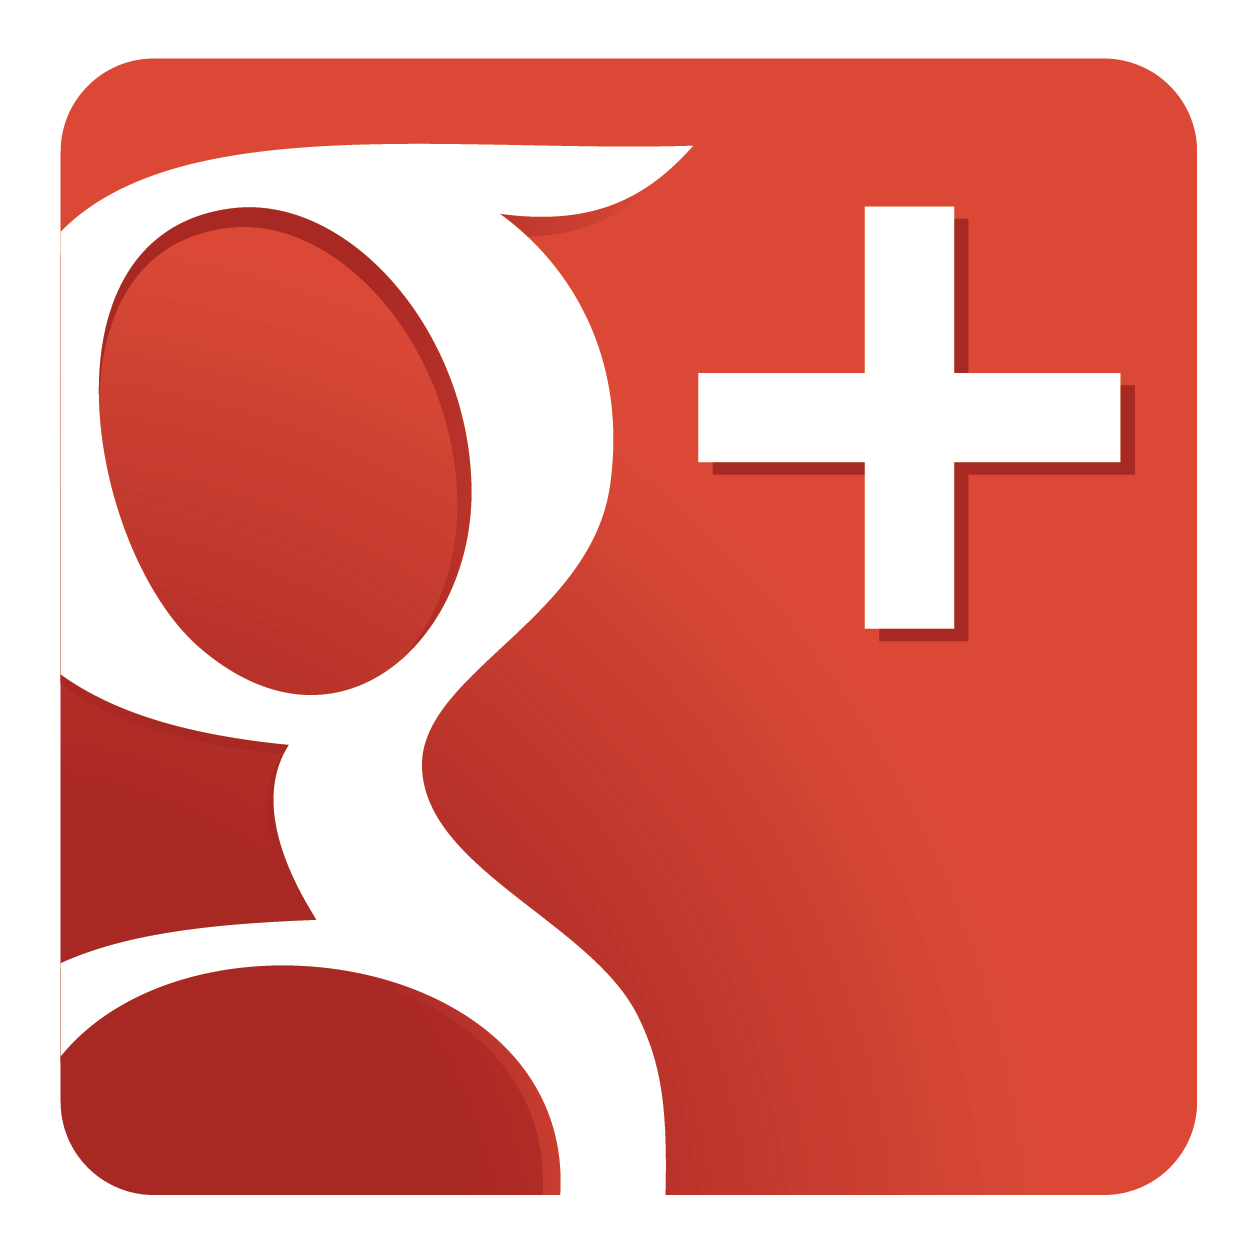 GooglePlus Logo 02